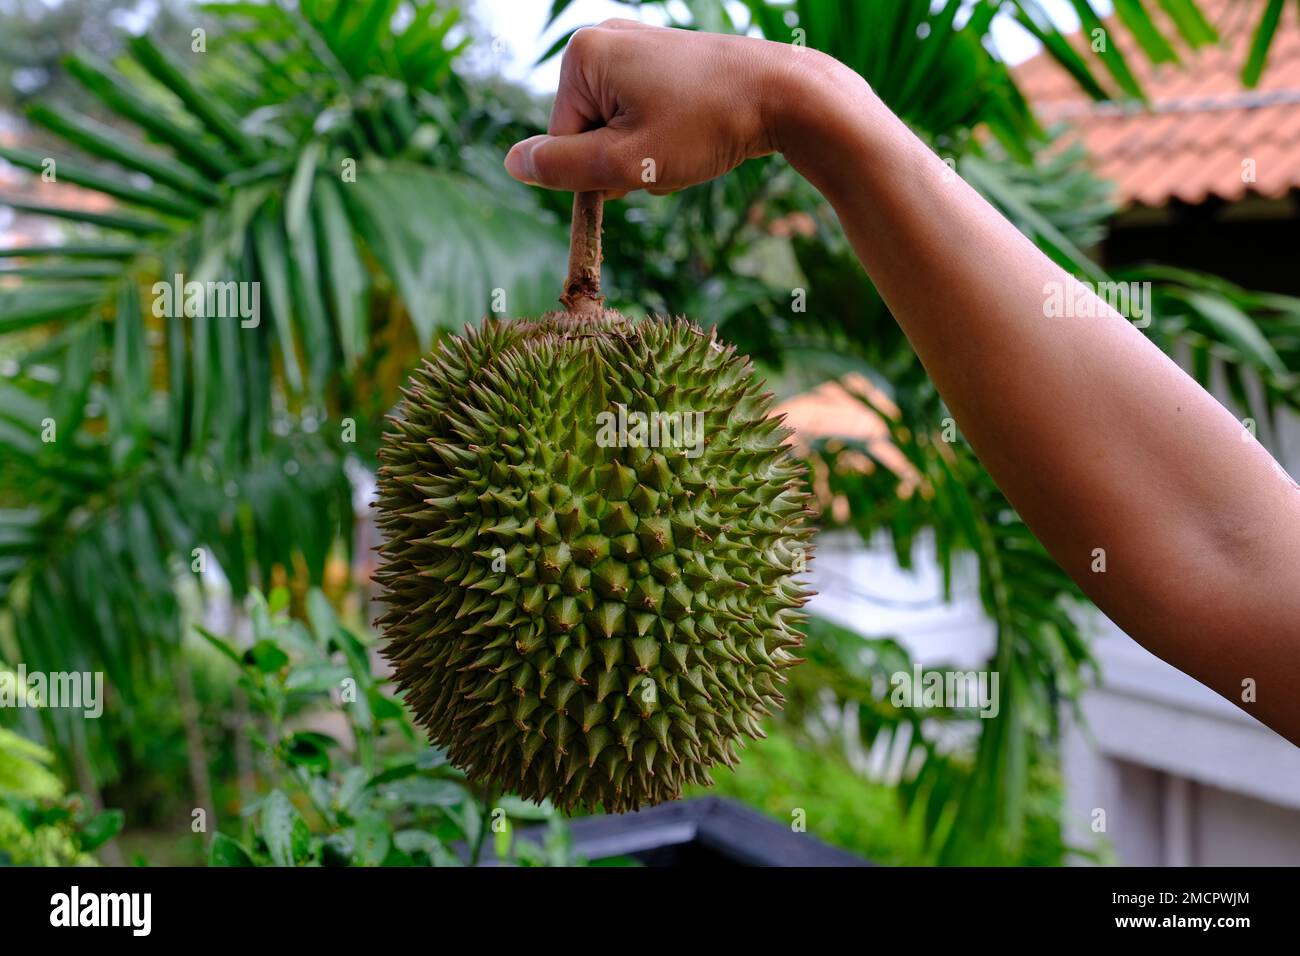 Indonesien Batam - Durian - König der Früchte Stockfoto